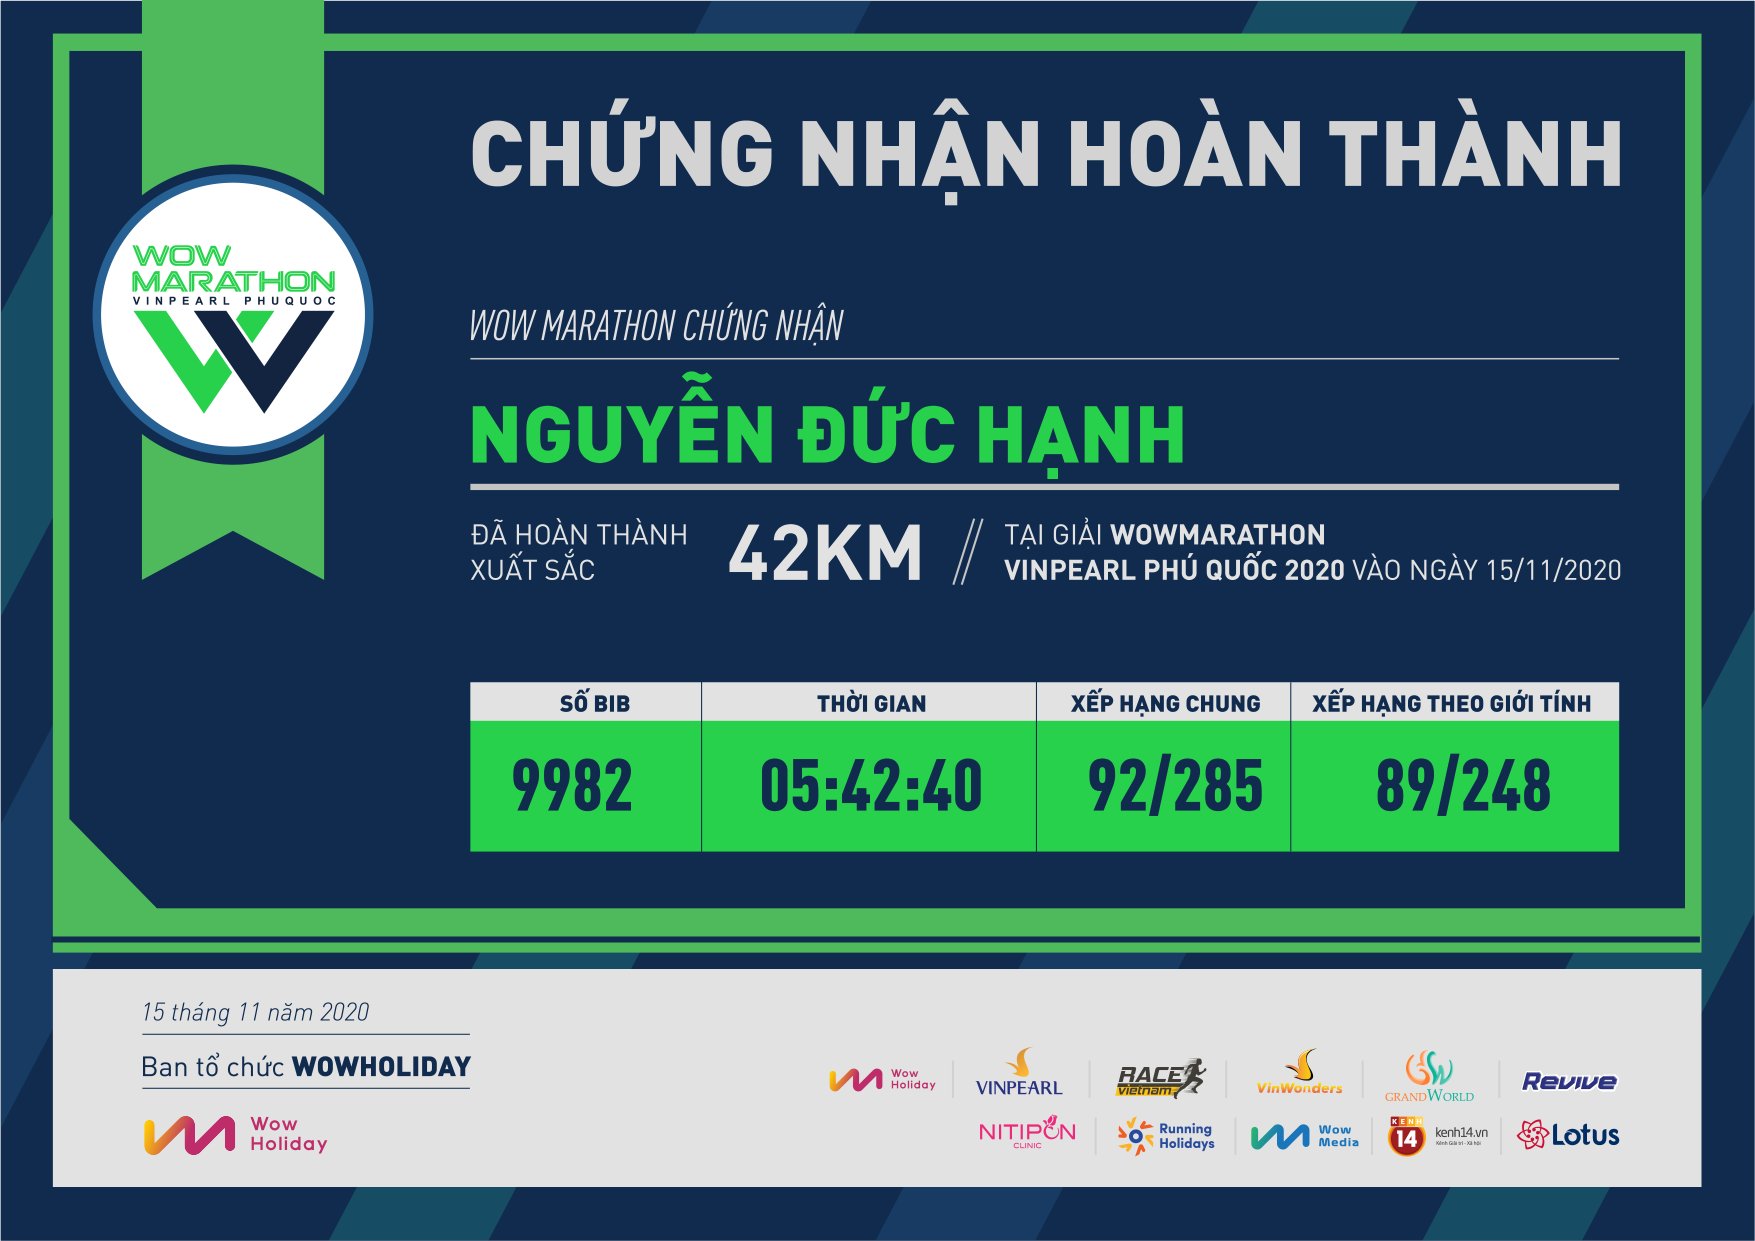 9982 - Nguyễn Đức Hạnh